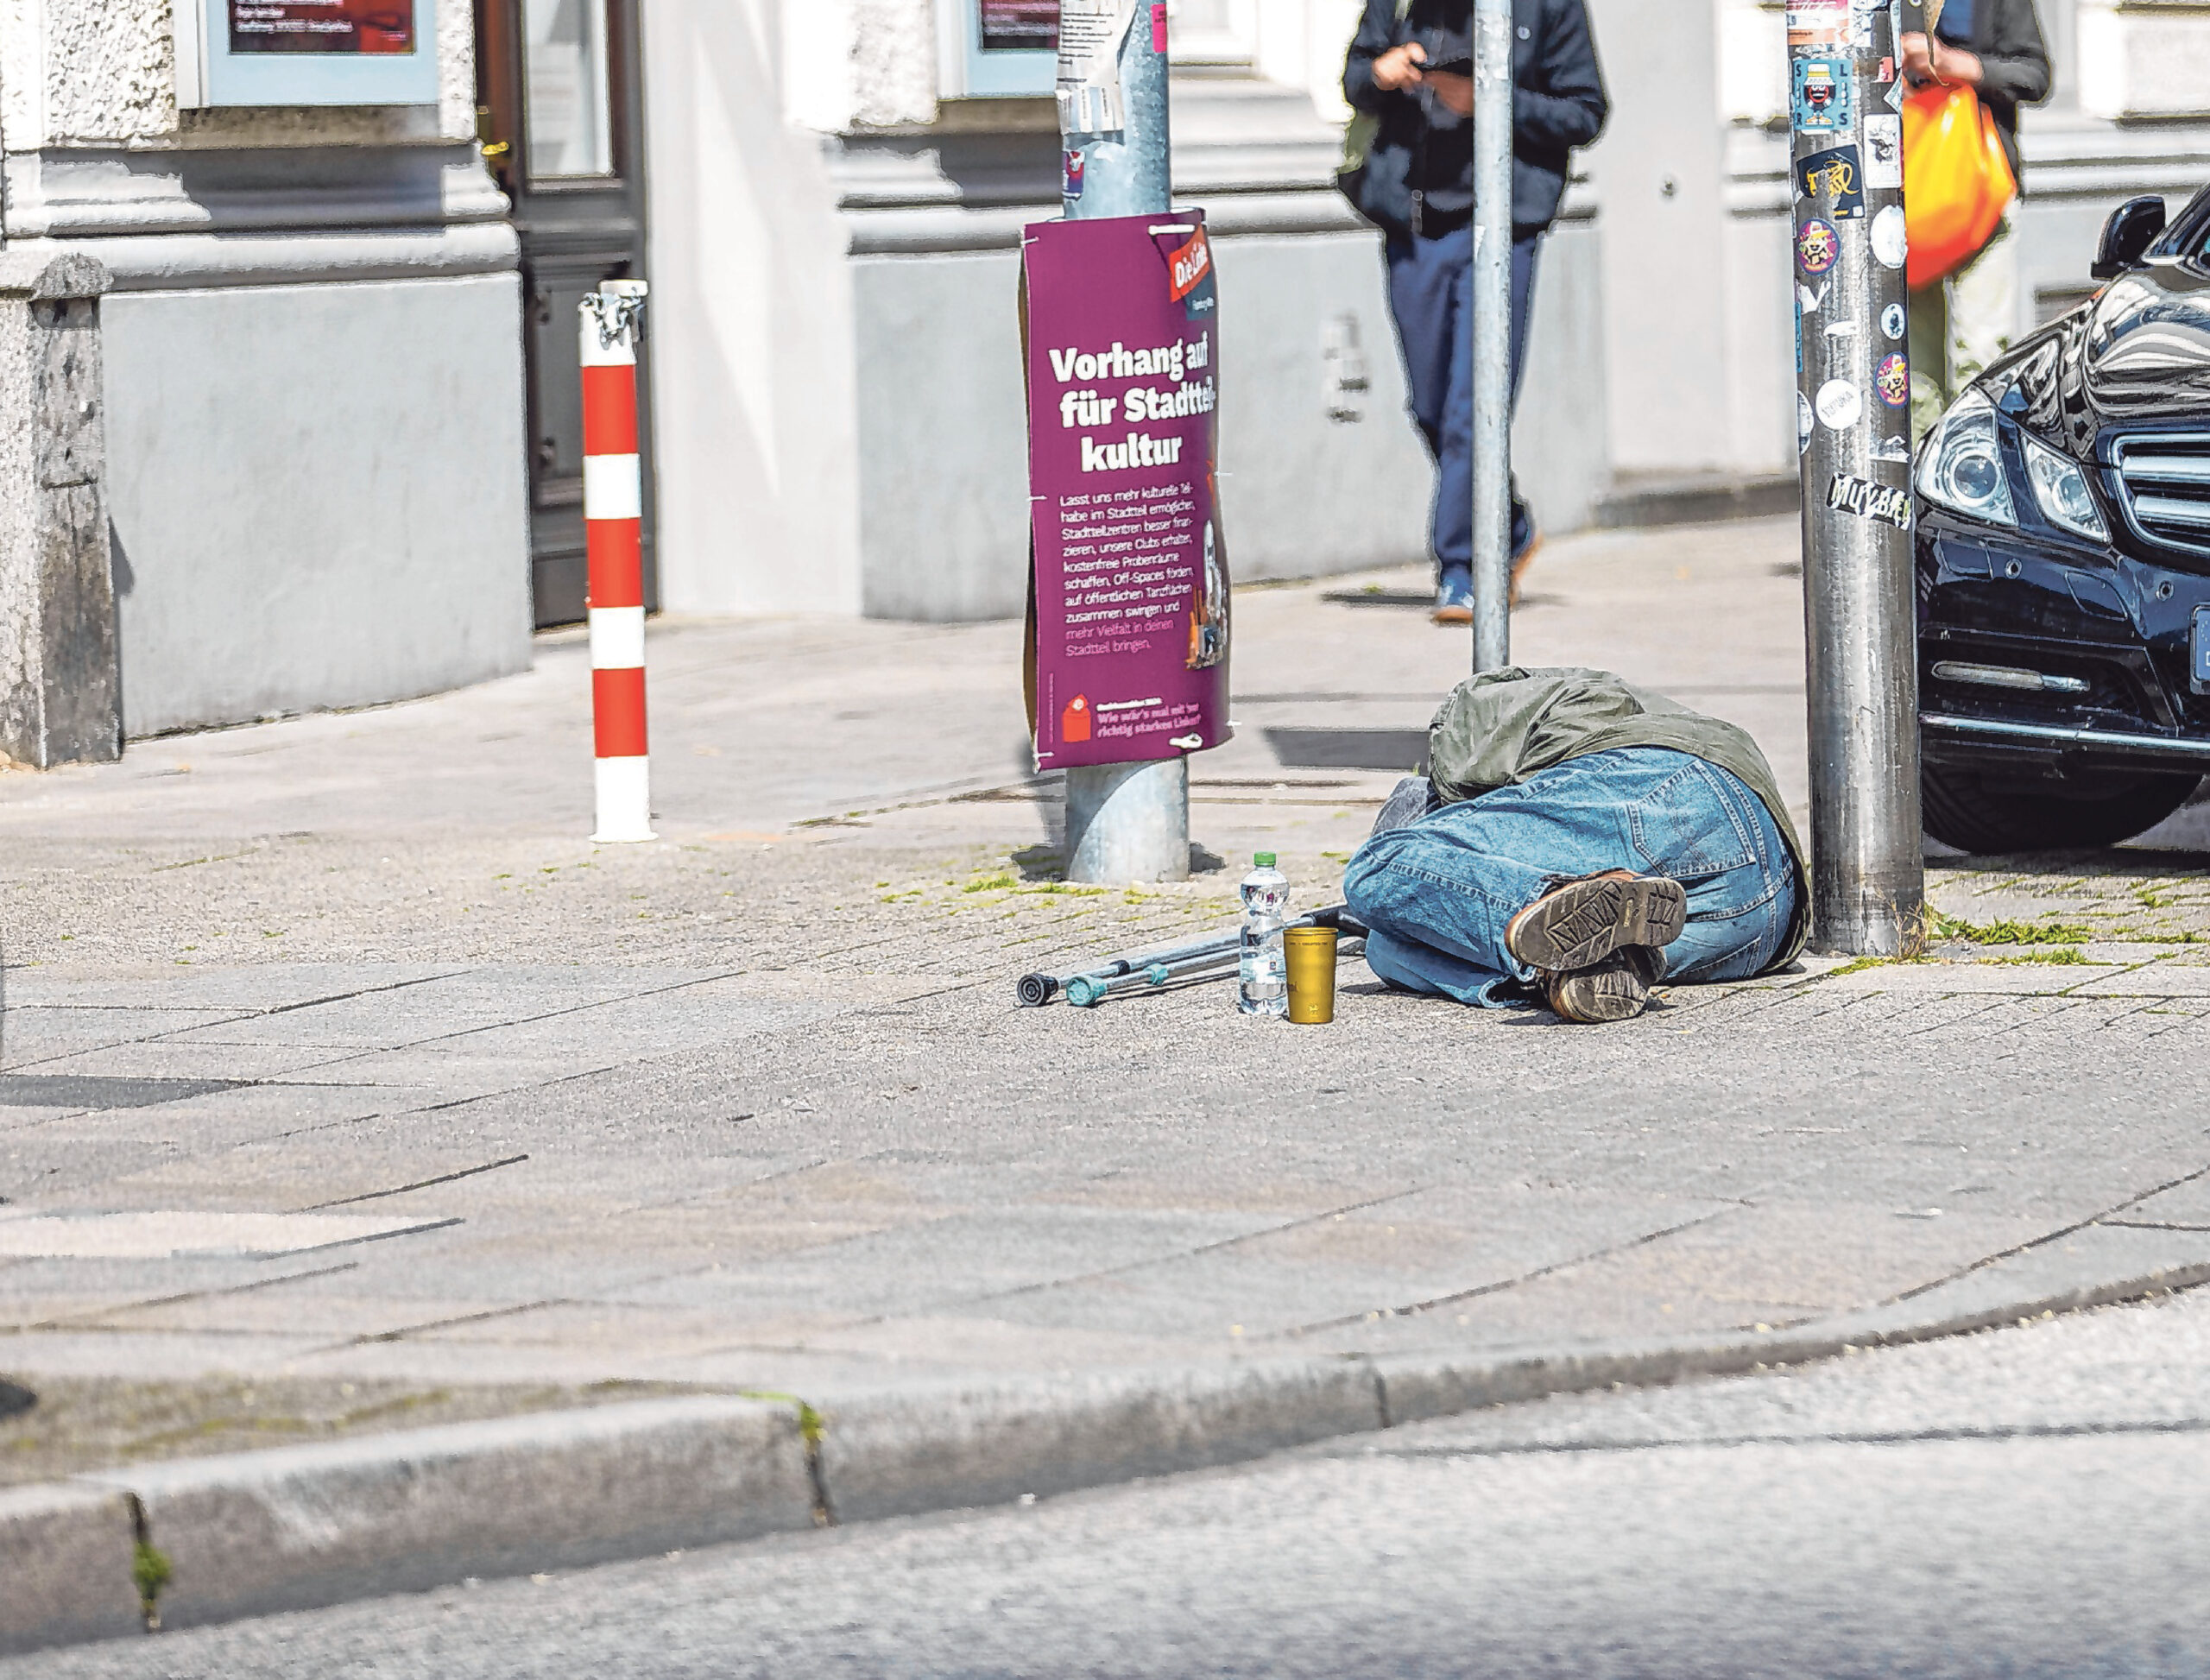 Aufgrund der Sicherheitspolitik am Hauptbahnhof werden immer mehr Obdachlose und Drogenabhängige in die umliegenden Stadtteile verdrängt.